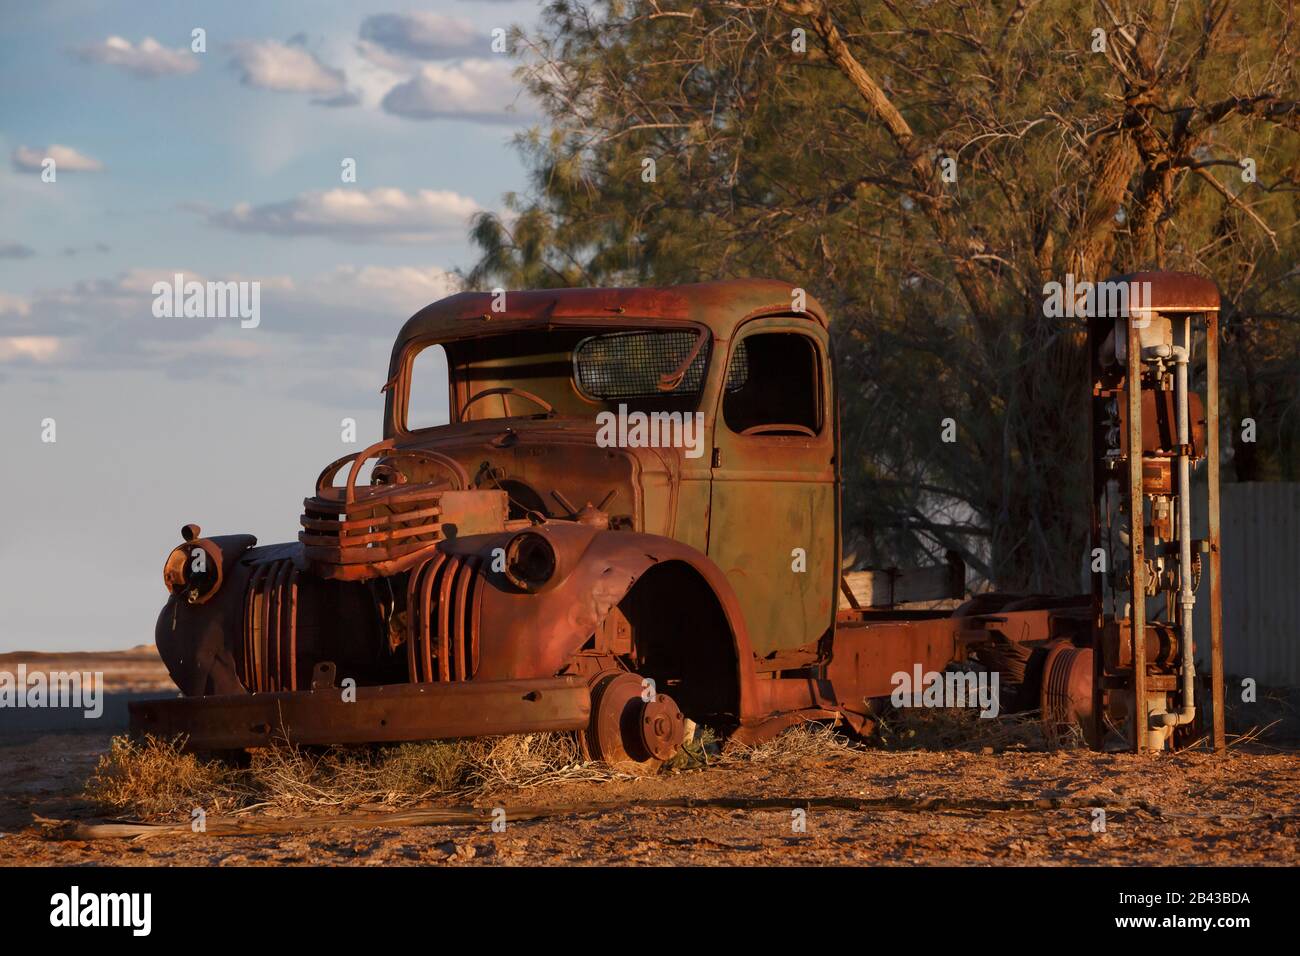 l'épave de camion de ramassage abandonnée rouillée est abandonnée sur le côté d'une route au coucher du soleil Banque D'Images